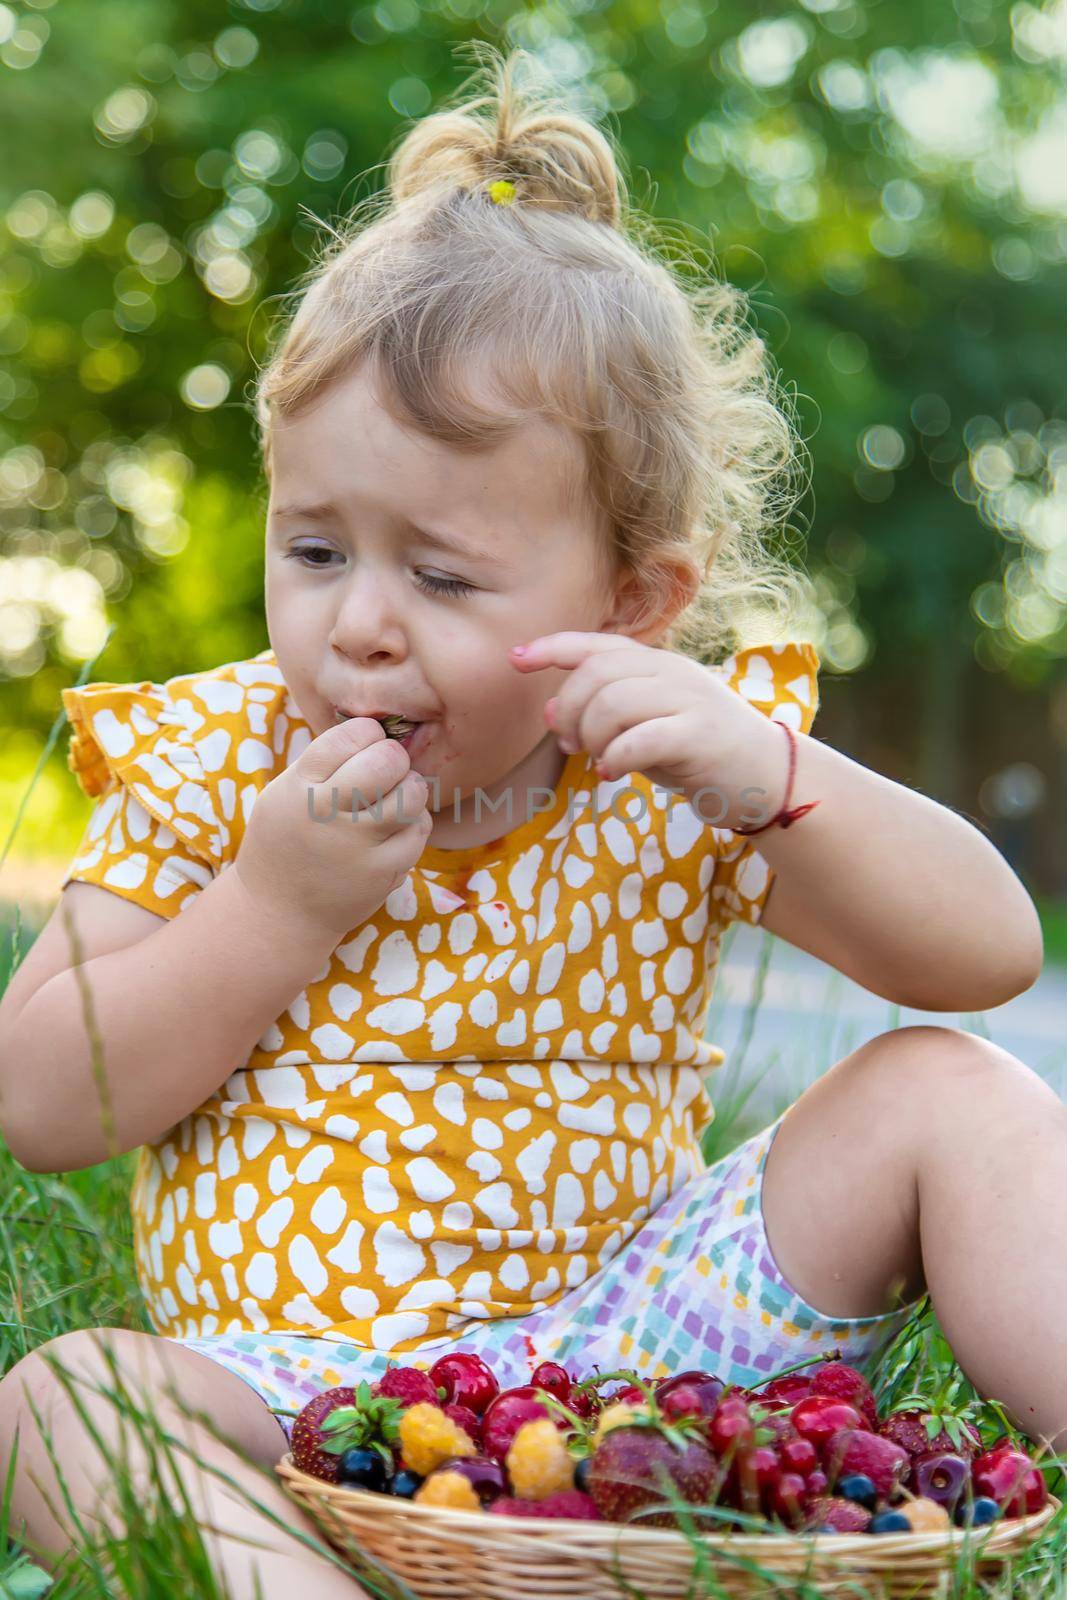 The child eats berries in the garden. Selective focus. Kid.